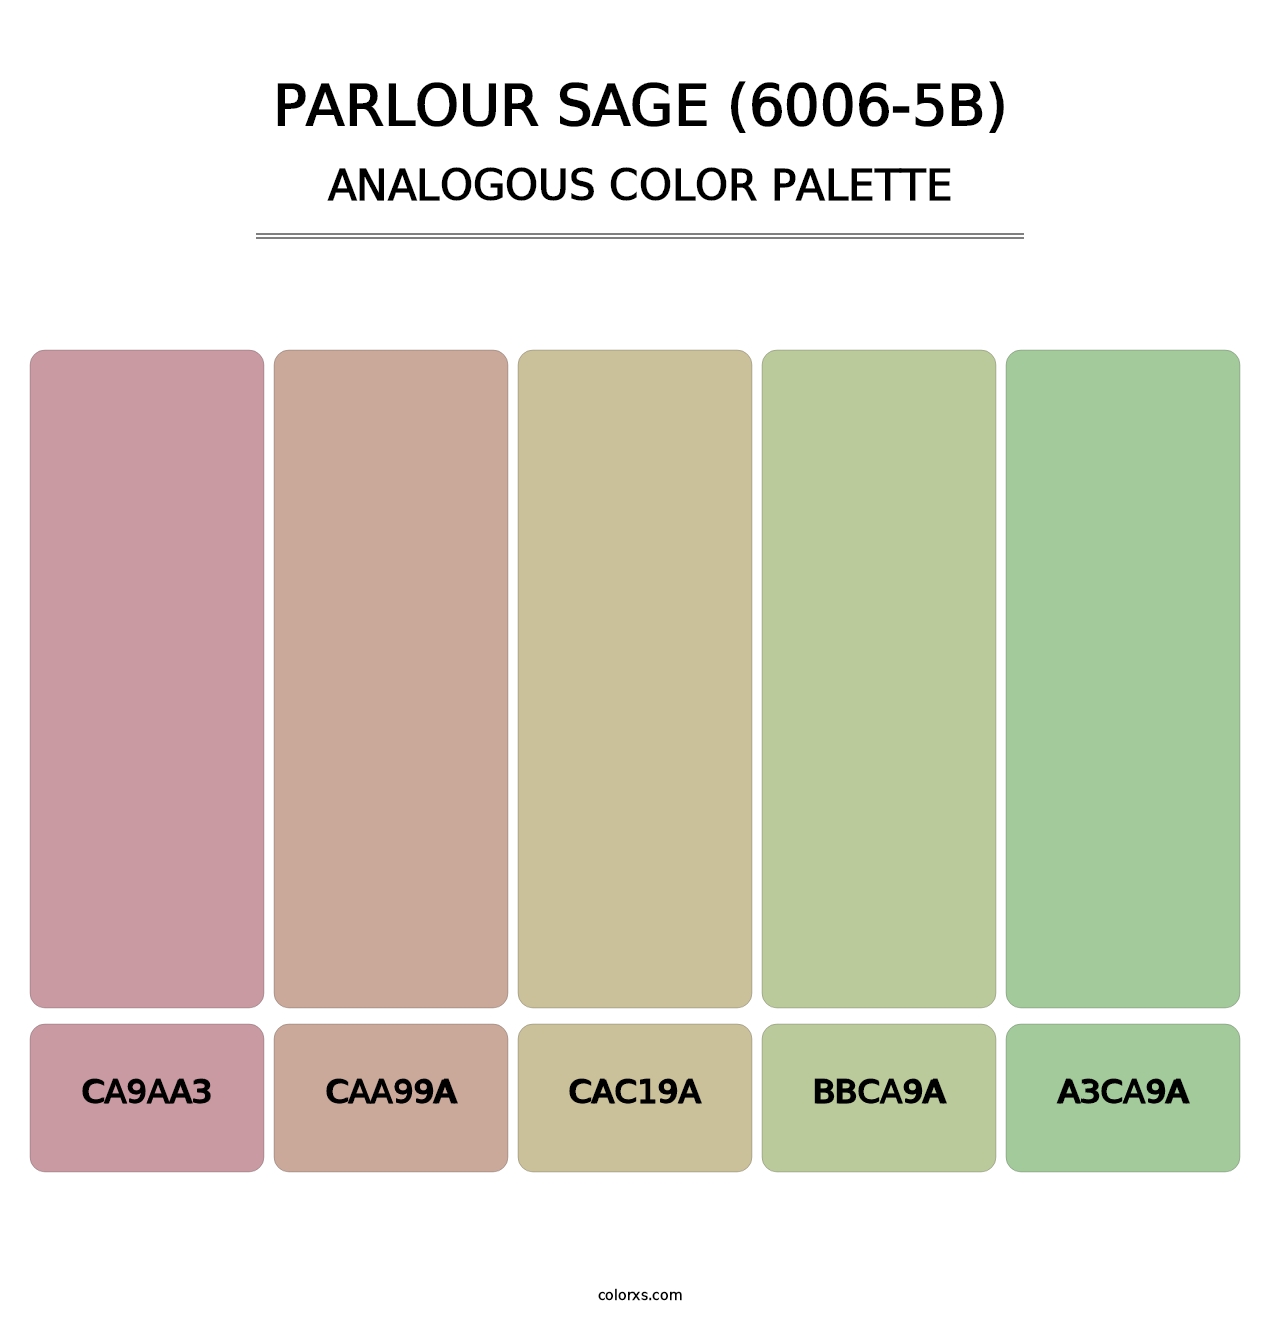 Parlour Sage (6006-5B) - Analogous Color Palette